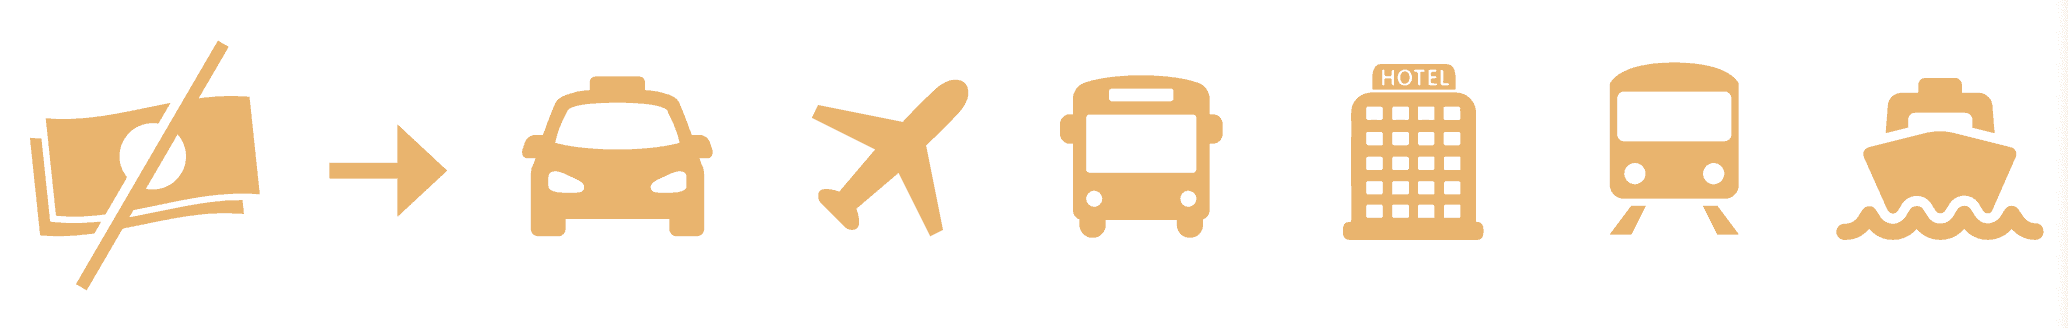 Über Icons wird kommuniziert, dass Taxis, Flugzeug, Bus, Hotel, Zug und Boot kein Geld für Assistenzhund nehmen sollten.